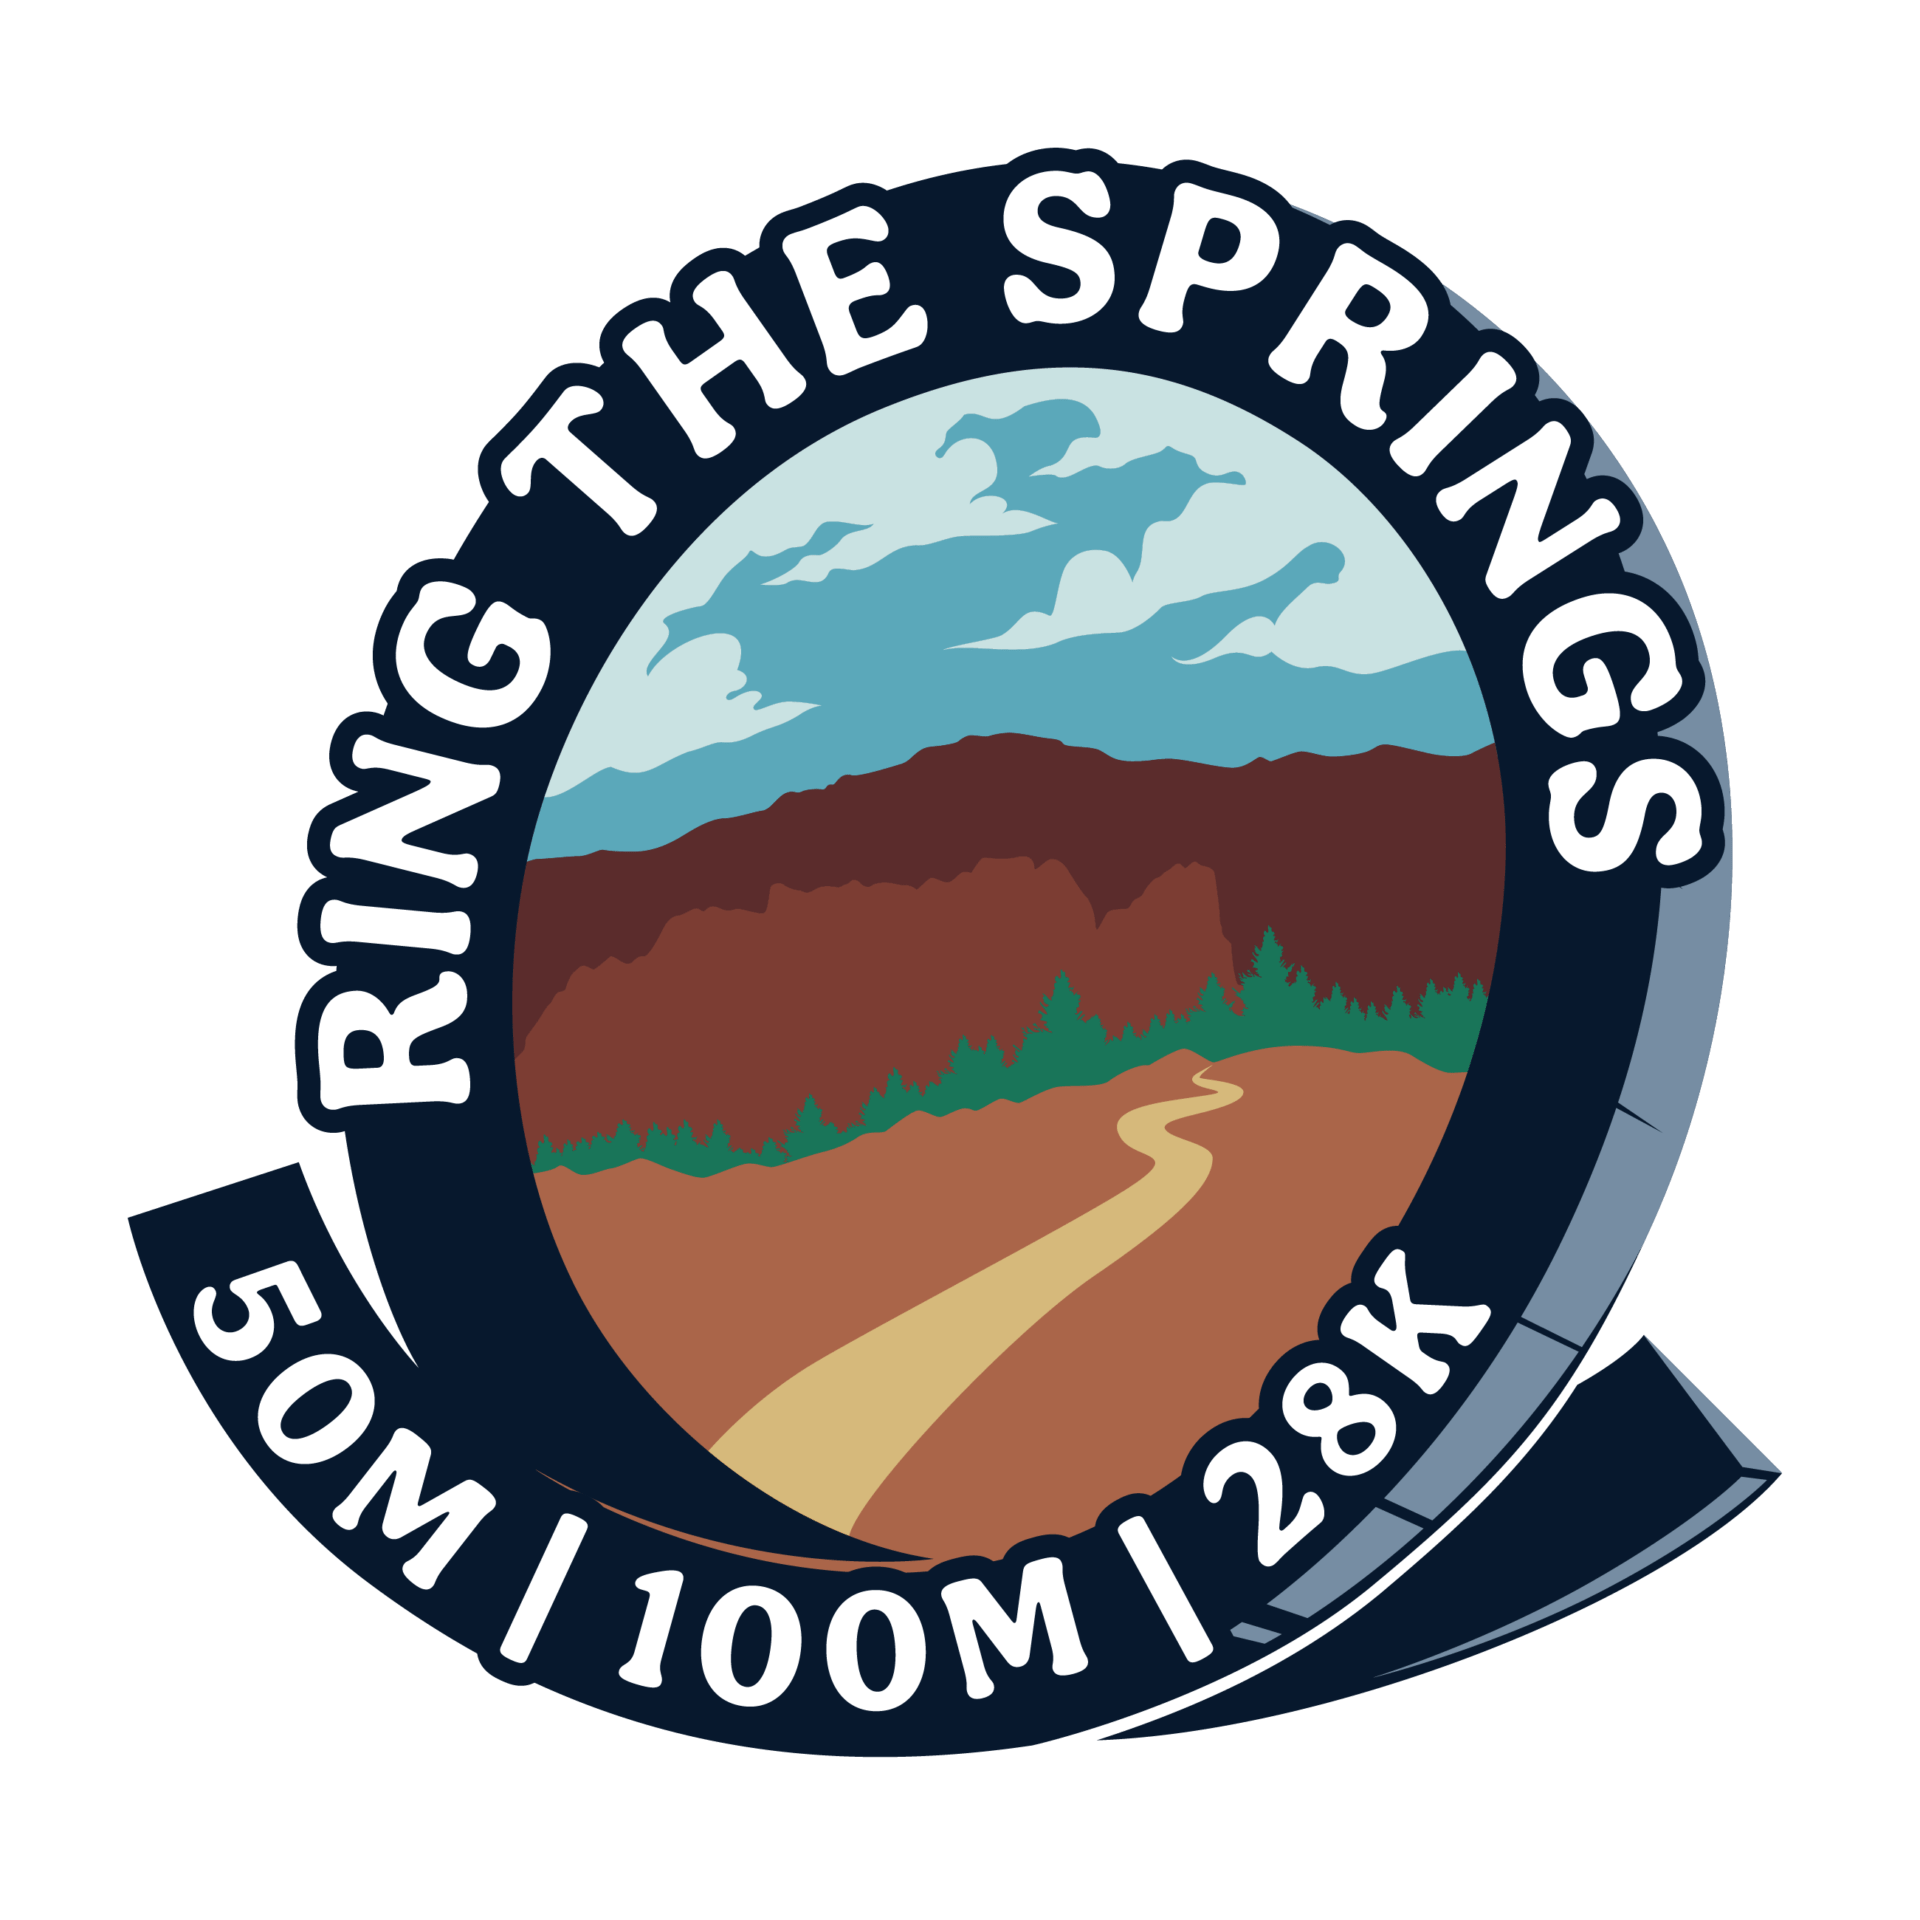 Ring the Springs logo on RaceRaves